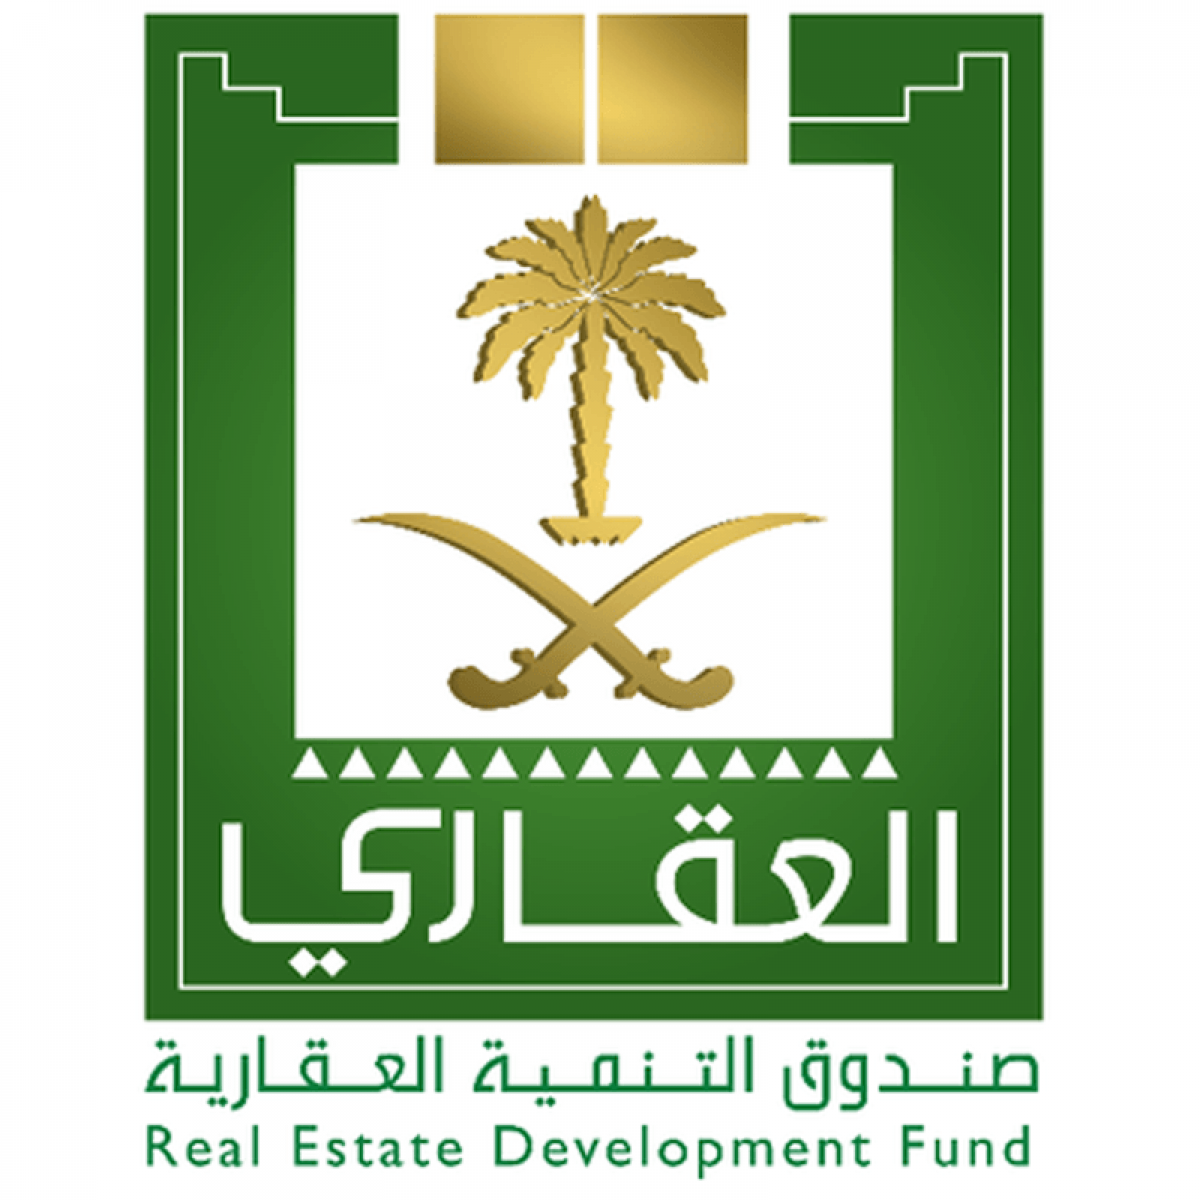 الاستعلام عن صندوق التنميه العقاري برقم الهوية في المملكة العربية السعودية